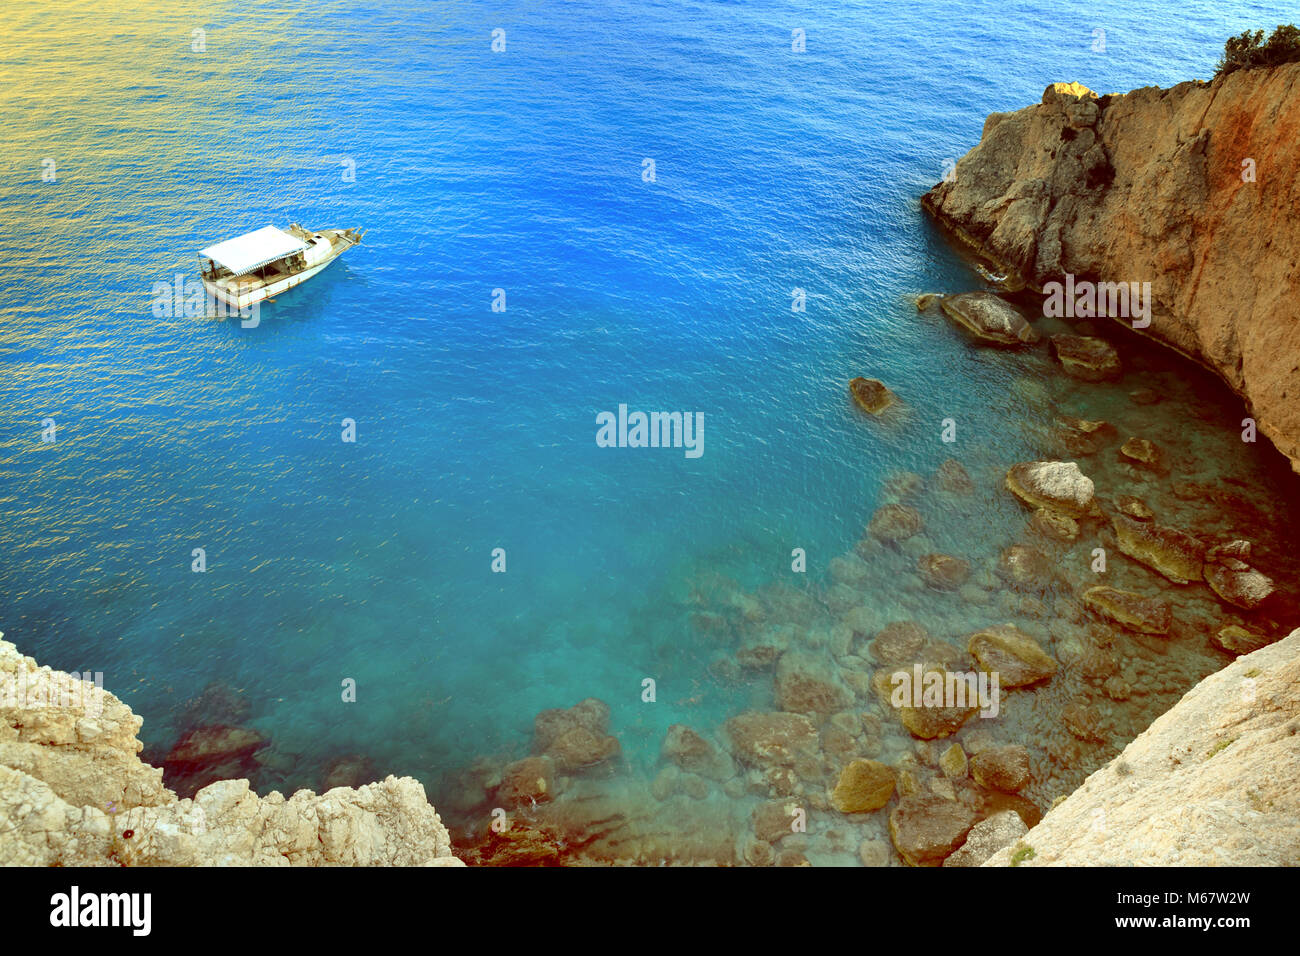 Grèce littoral d'été vue. L'eau de mer bleue, rocky mountain et voile Banque D'Images